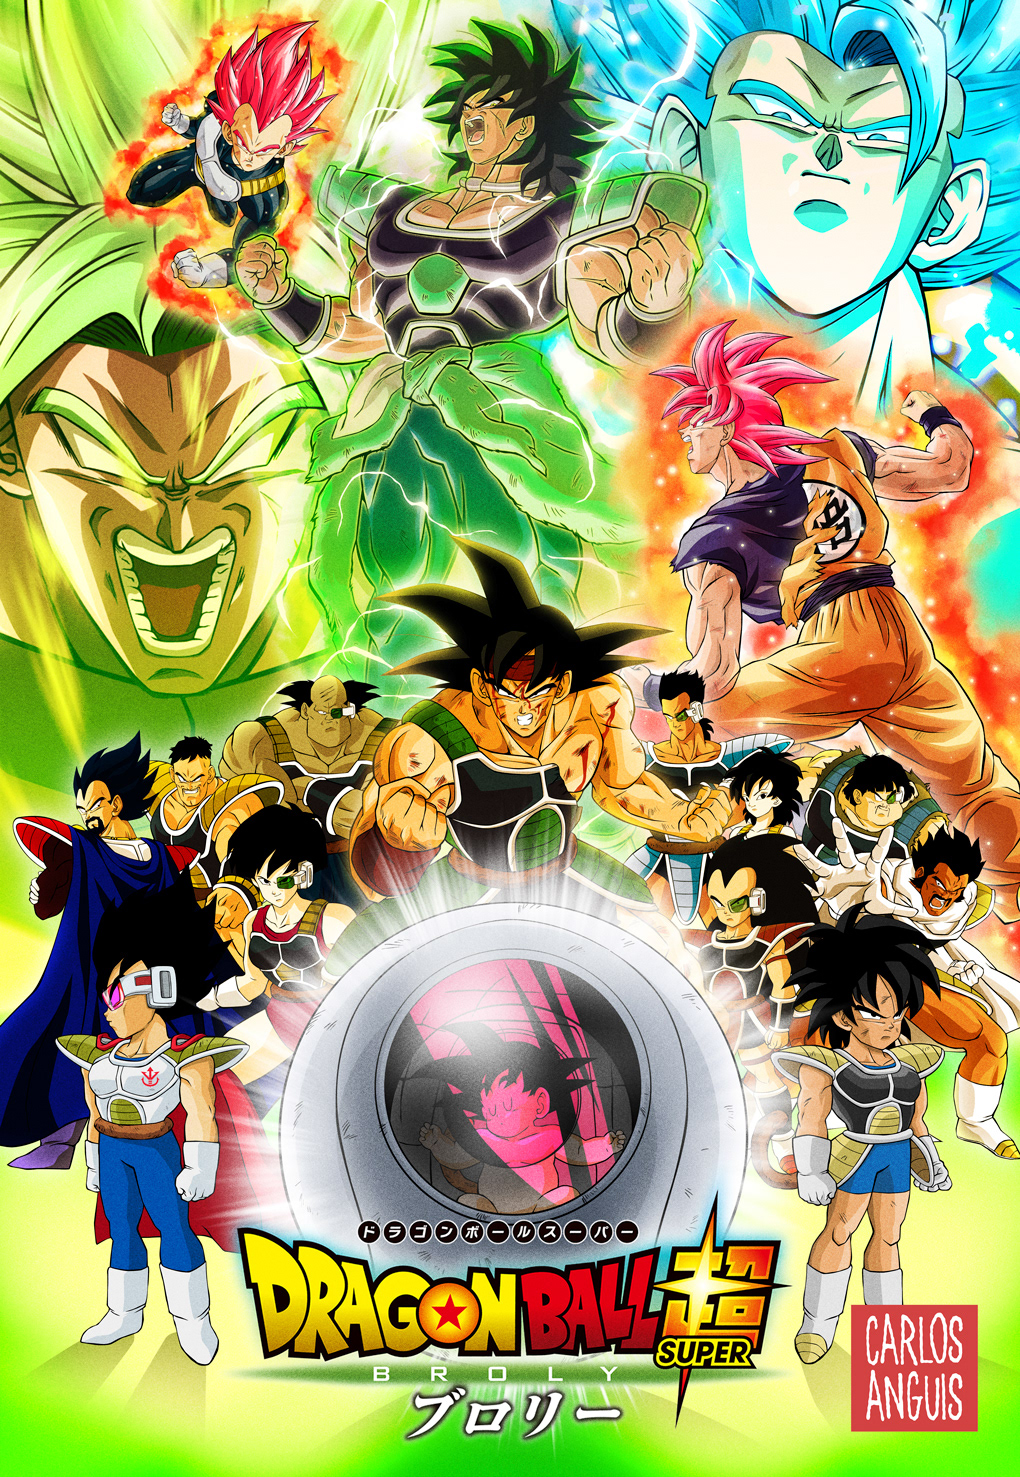 dragon ball goku anime manga Illustrator Broly poster Fan Art movie poster